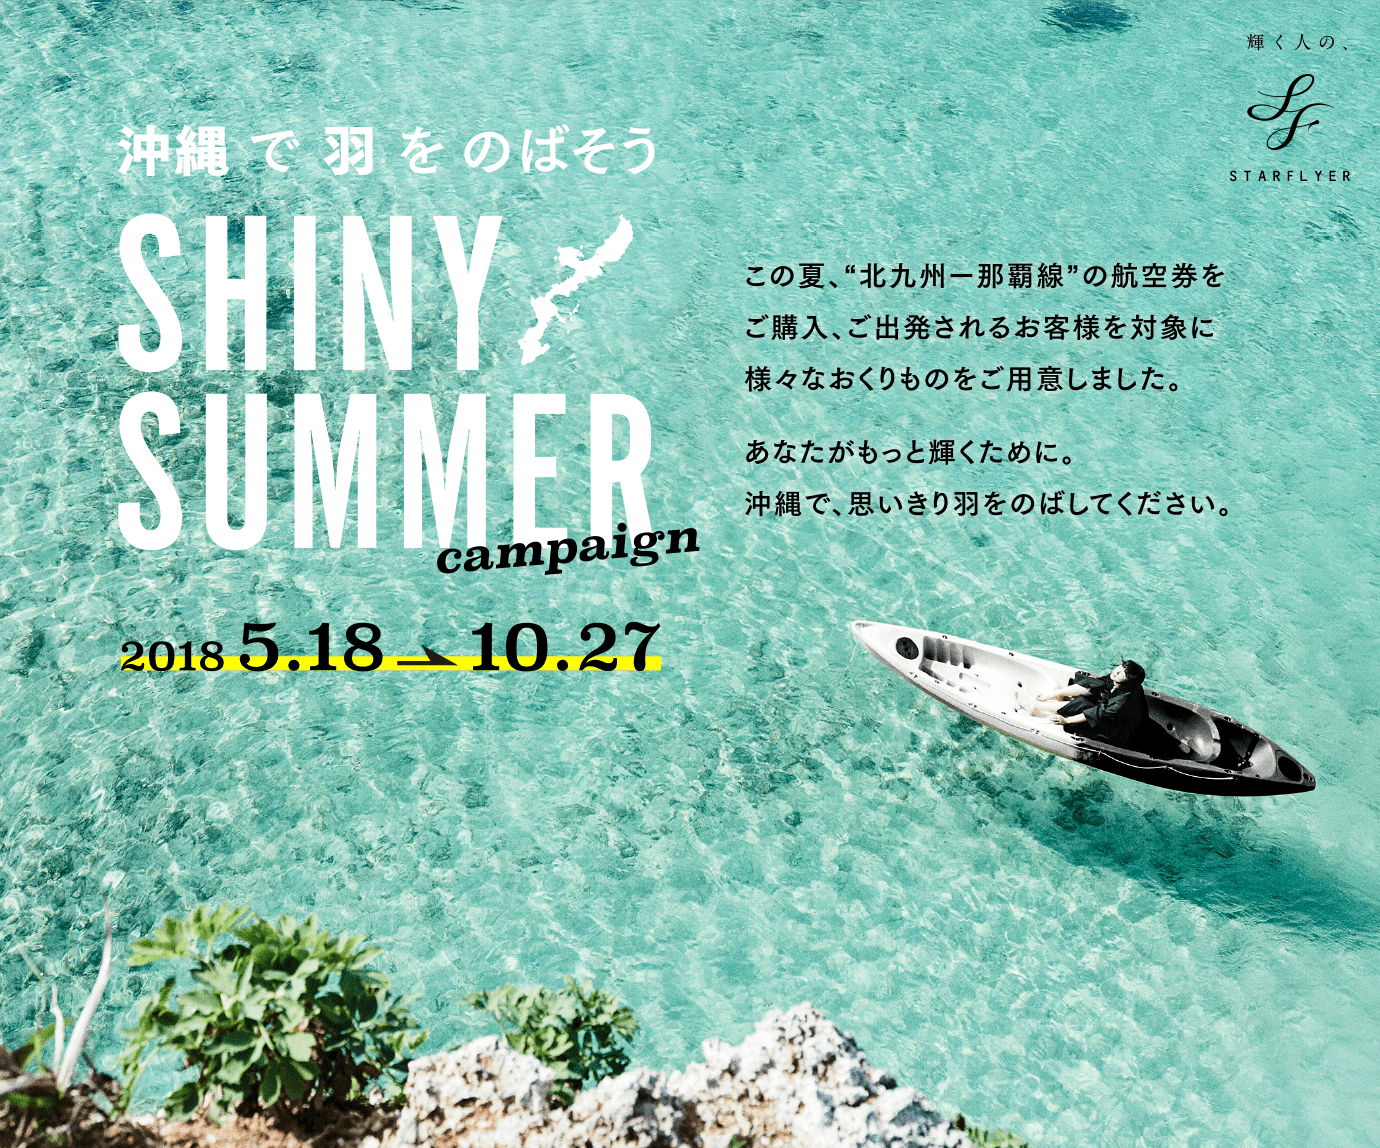 沖縄で羽をのばそう「SHINY SUMMER campaign」2018 5.18-10.27